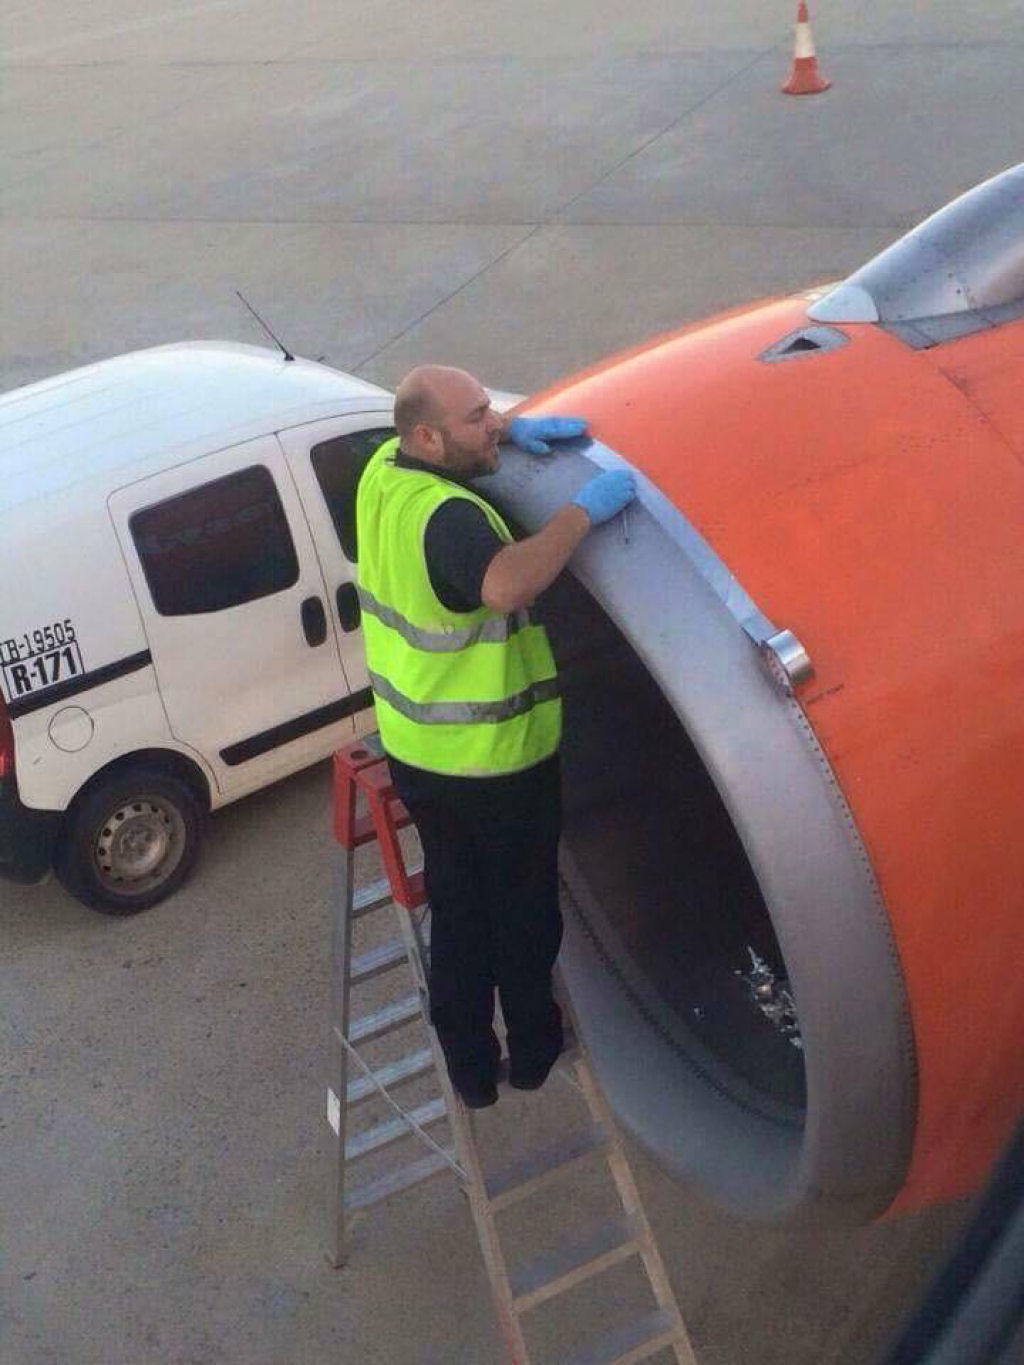 Passageiro fotografou funcionrio arrumando avio com fita adesiva momentos antes da descolagem